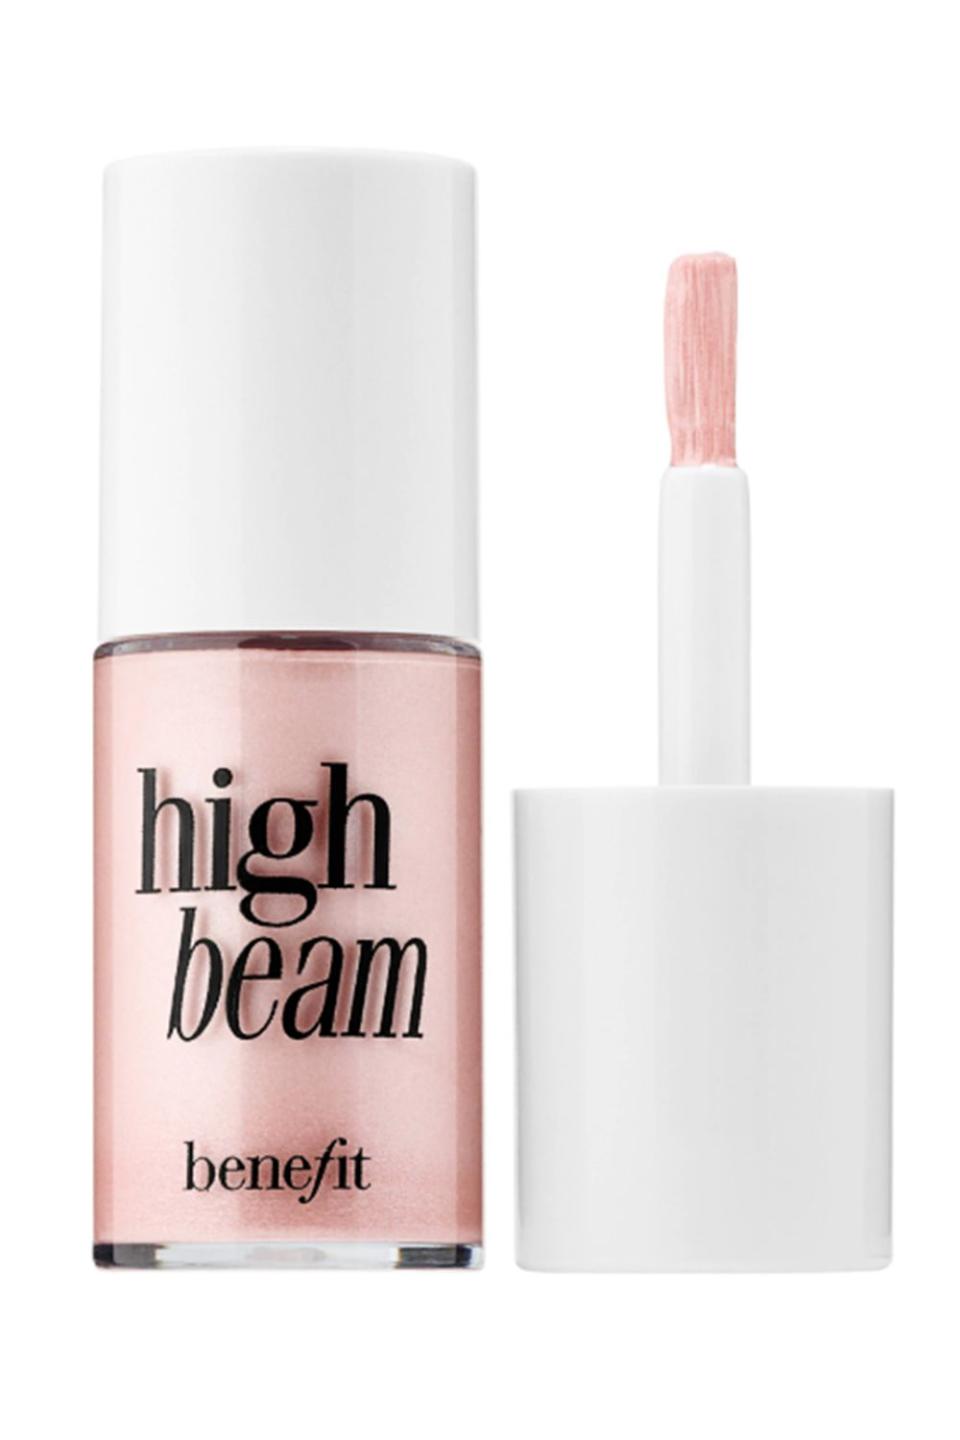 12) Benefit Cosmetics High Beam Liquid Face Highlighter